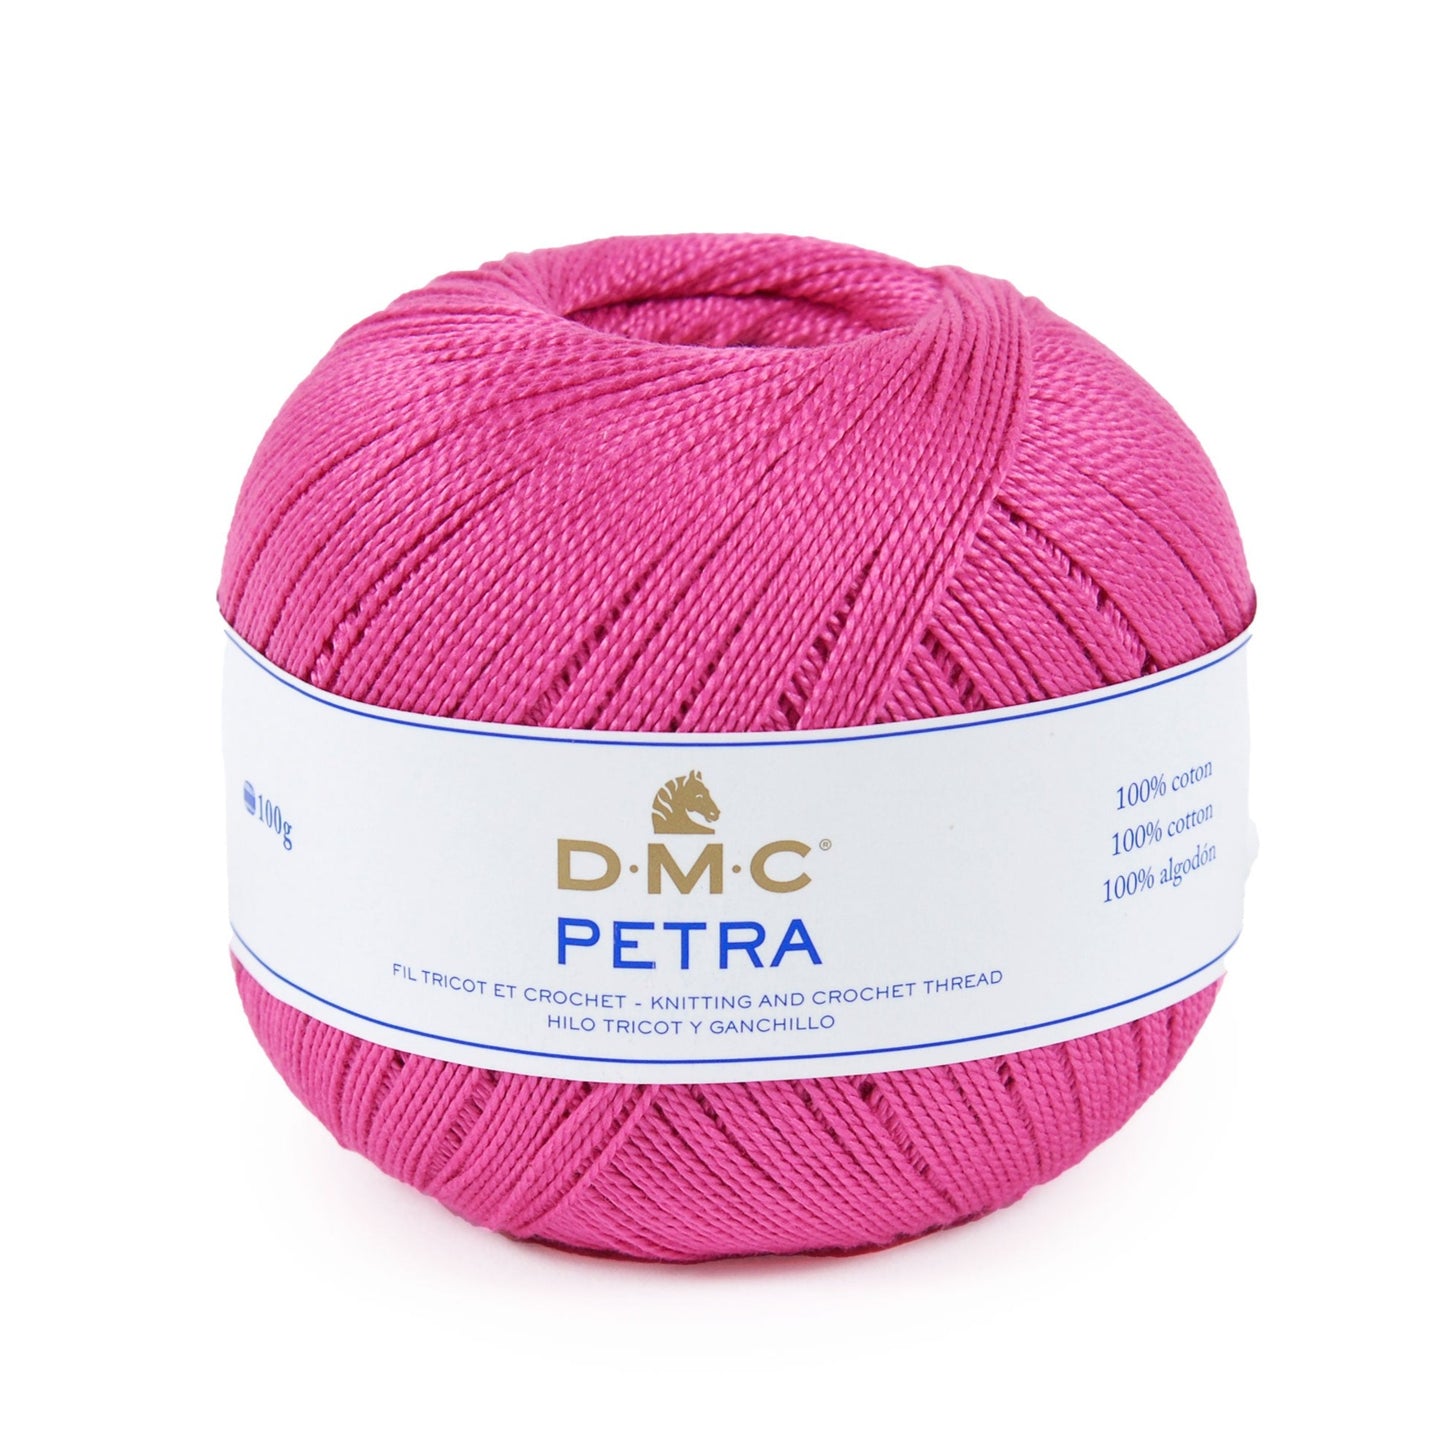 PETRA - Fine crochet cotton - Size 3 - More colours available